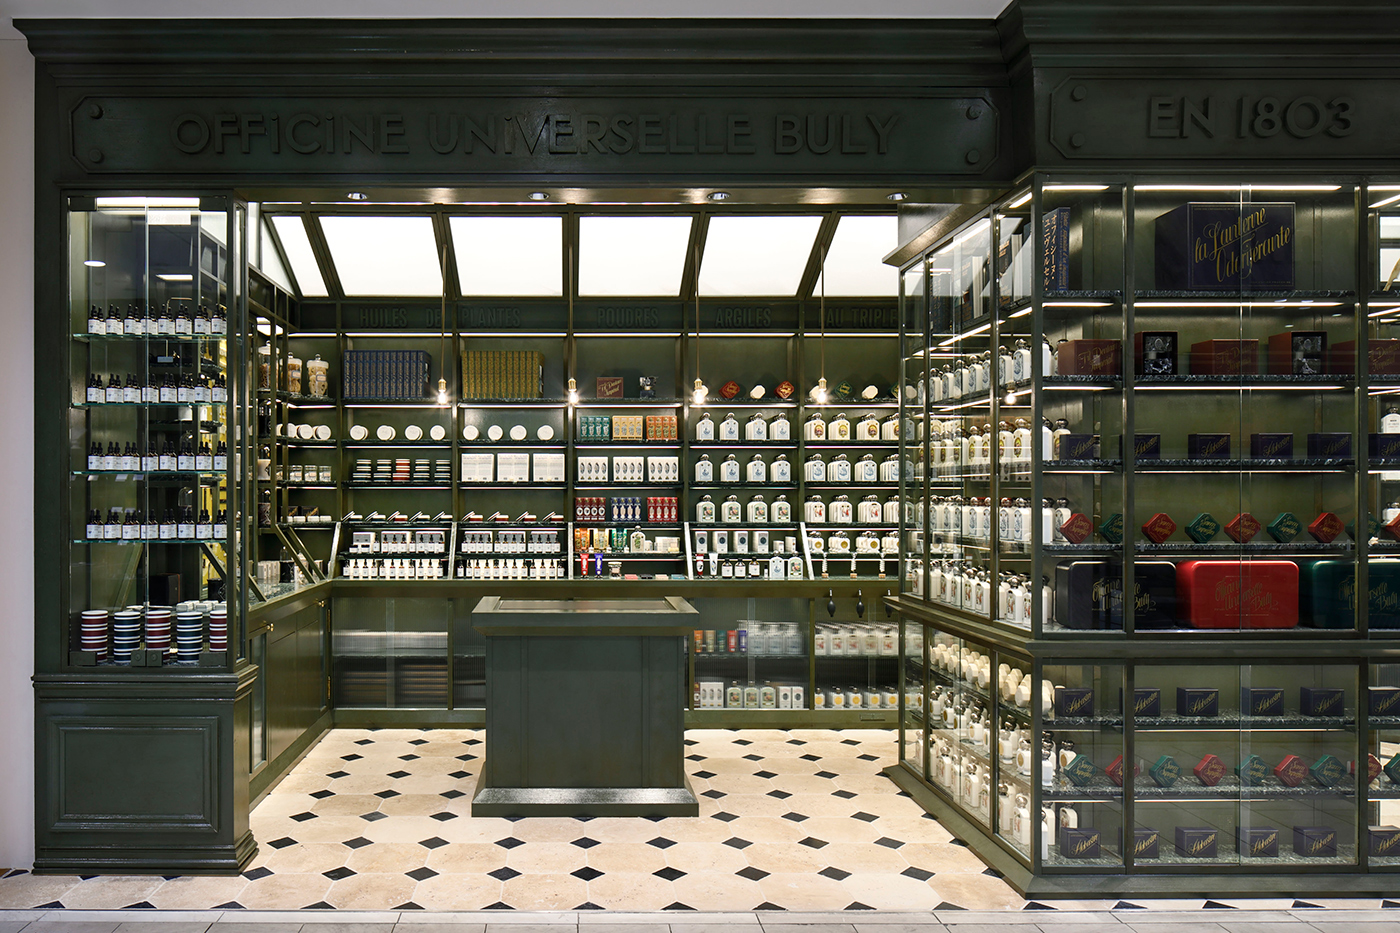 東京・代官山の本店を始め、国内に18店舗を展開。写真は、風情漂うスモーキーグリーンの家具が象徴的な銀座店。1950-60年代のフランスの田舎地方によく見られるグリーンハウスを再現しています。 OFFICINE UNIVERSELLE BULY（オフィシーヌ・ユニヴェルセル・ビュリー）　ビュリー BULY　オフィシーヌ・ユニヴェルセル・ビュリー ブランドディレクター ヴィクトワール 美容 コスメ 松屋銀座店